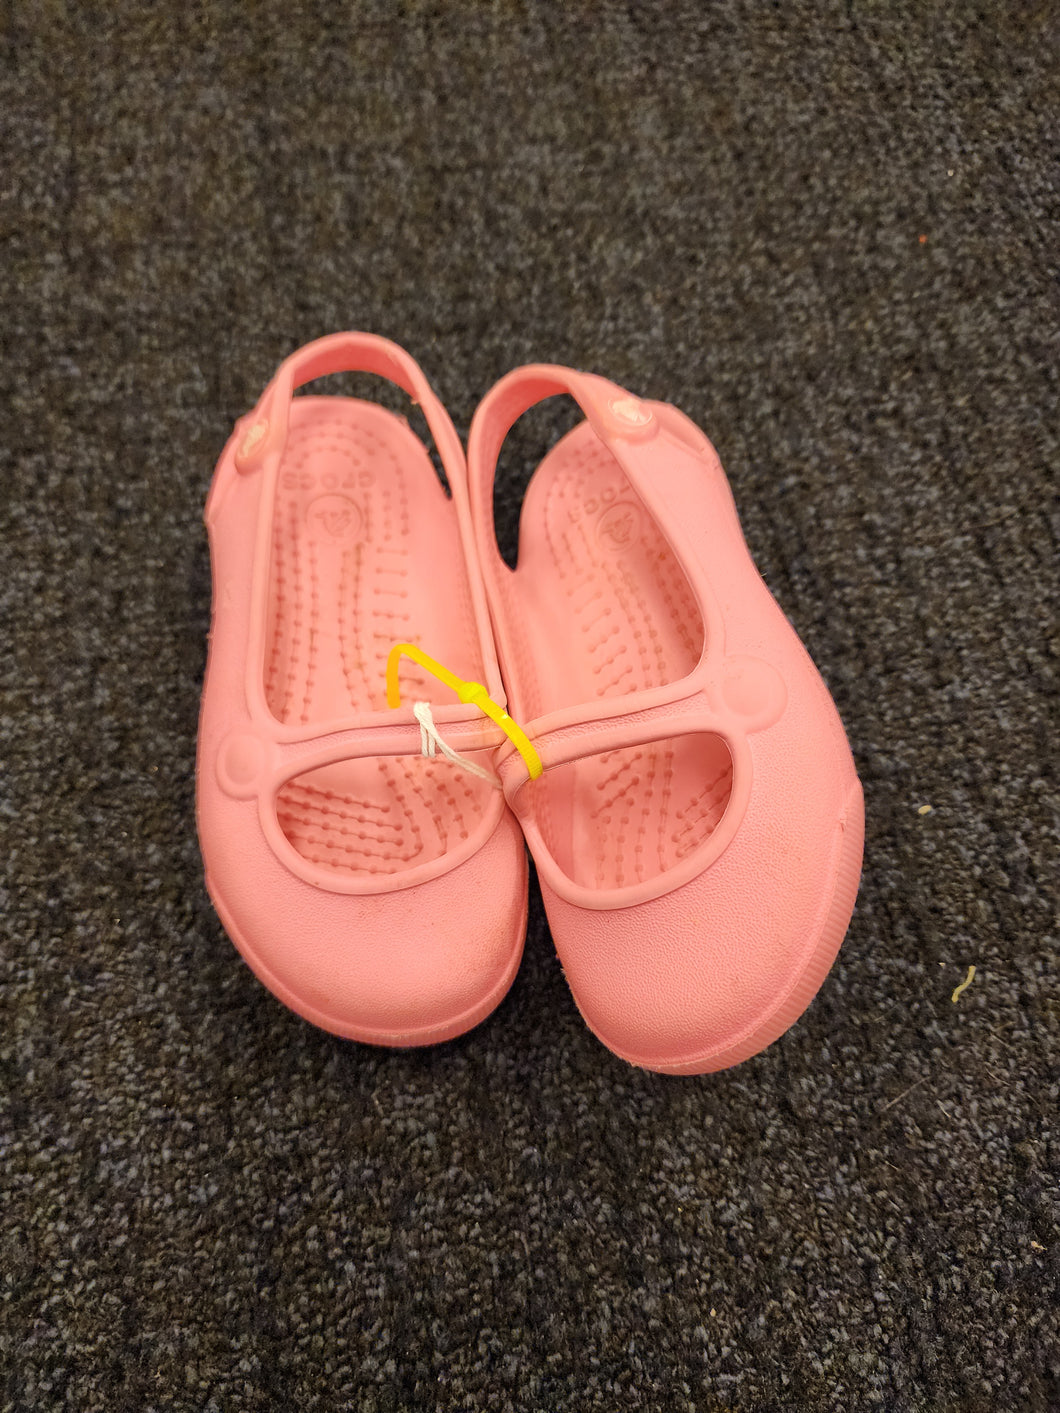 Crocs pink sandals 6